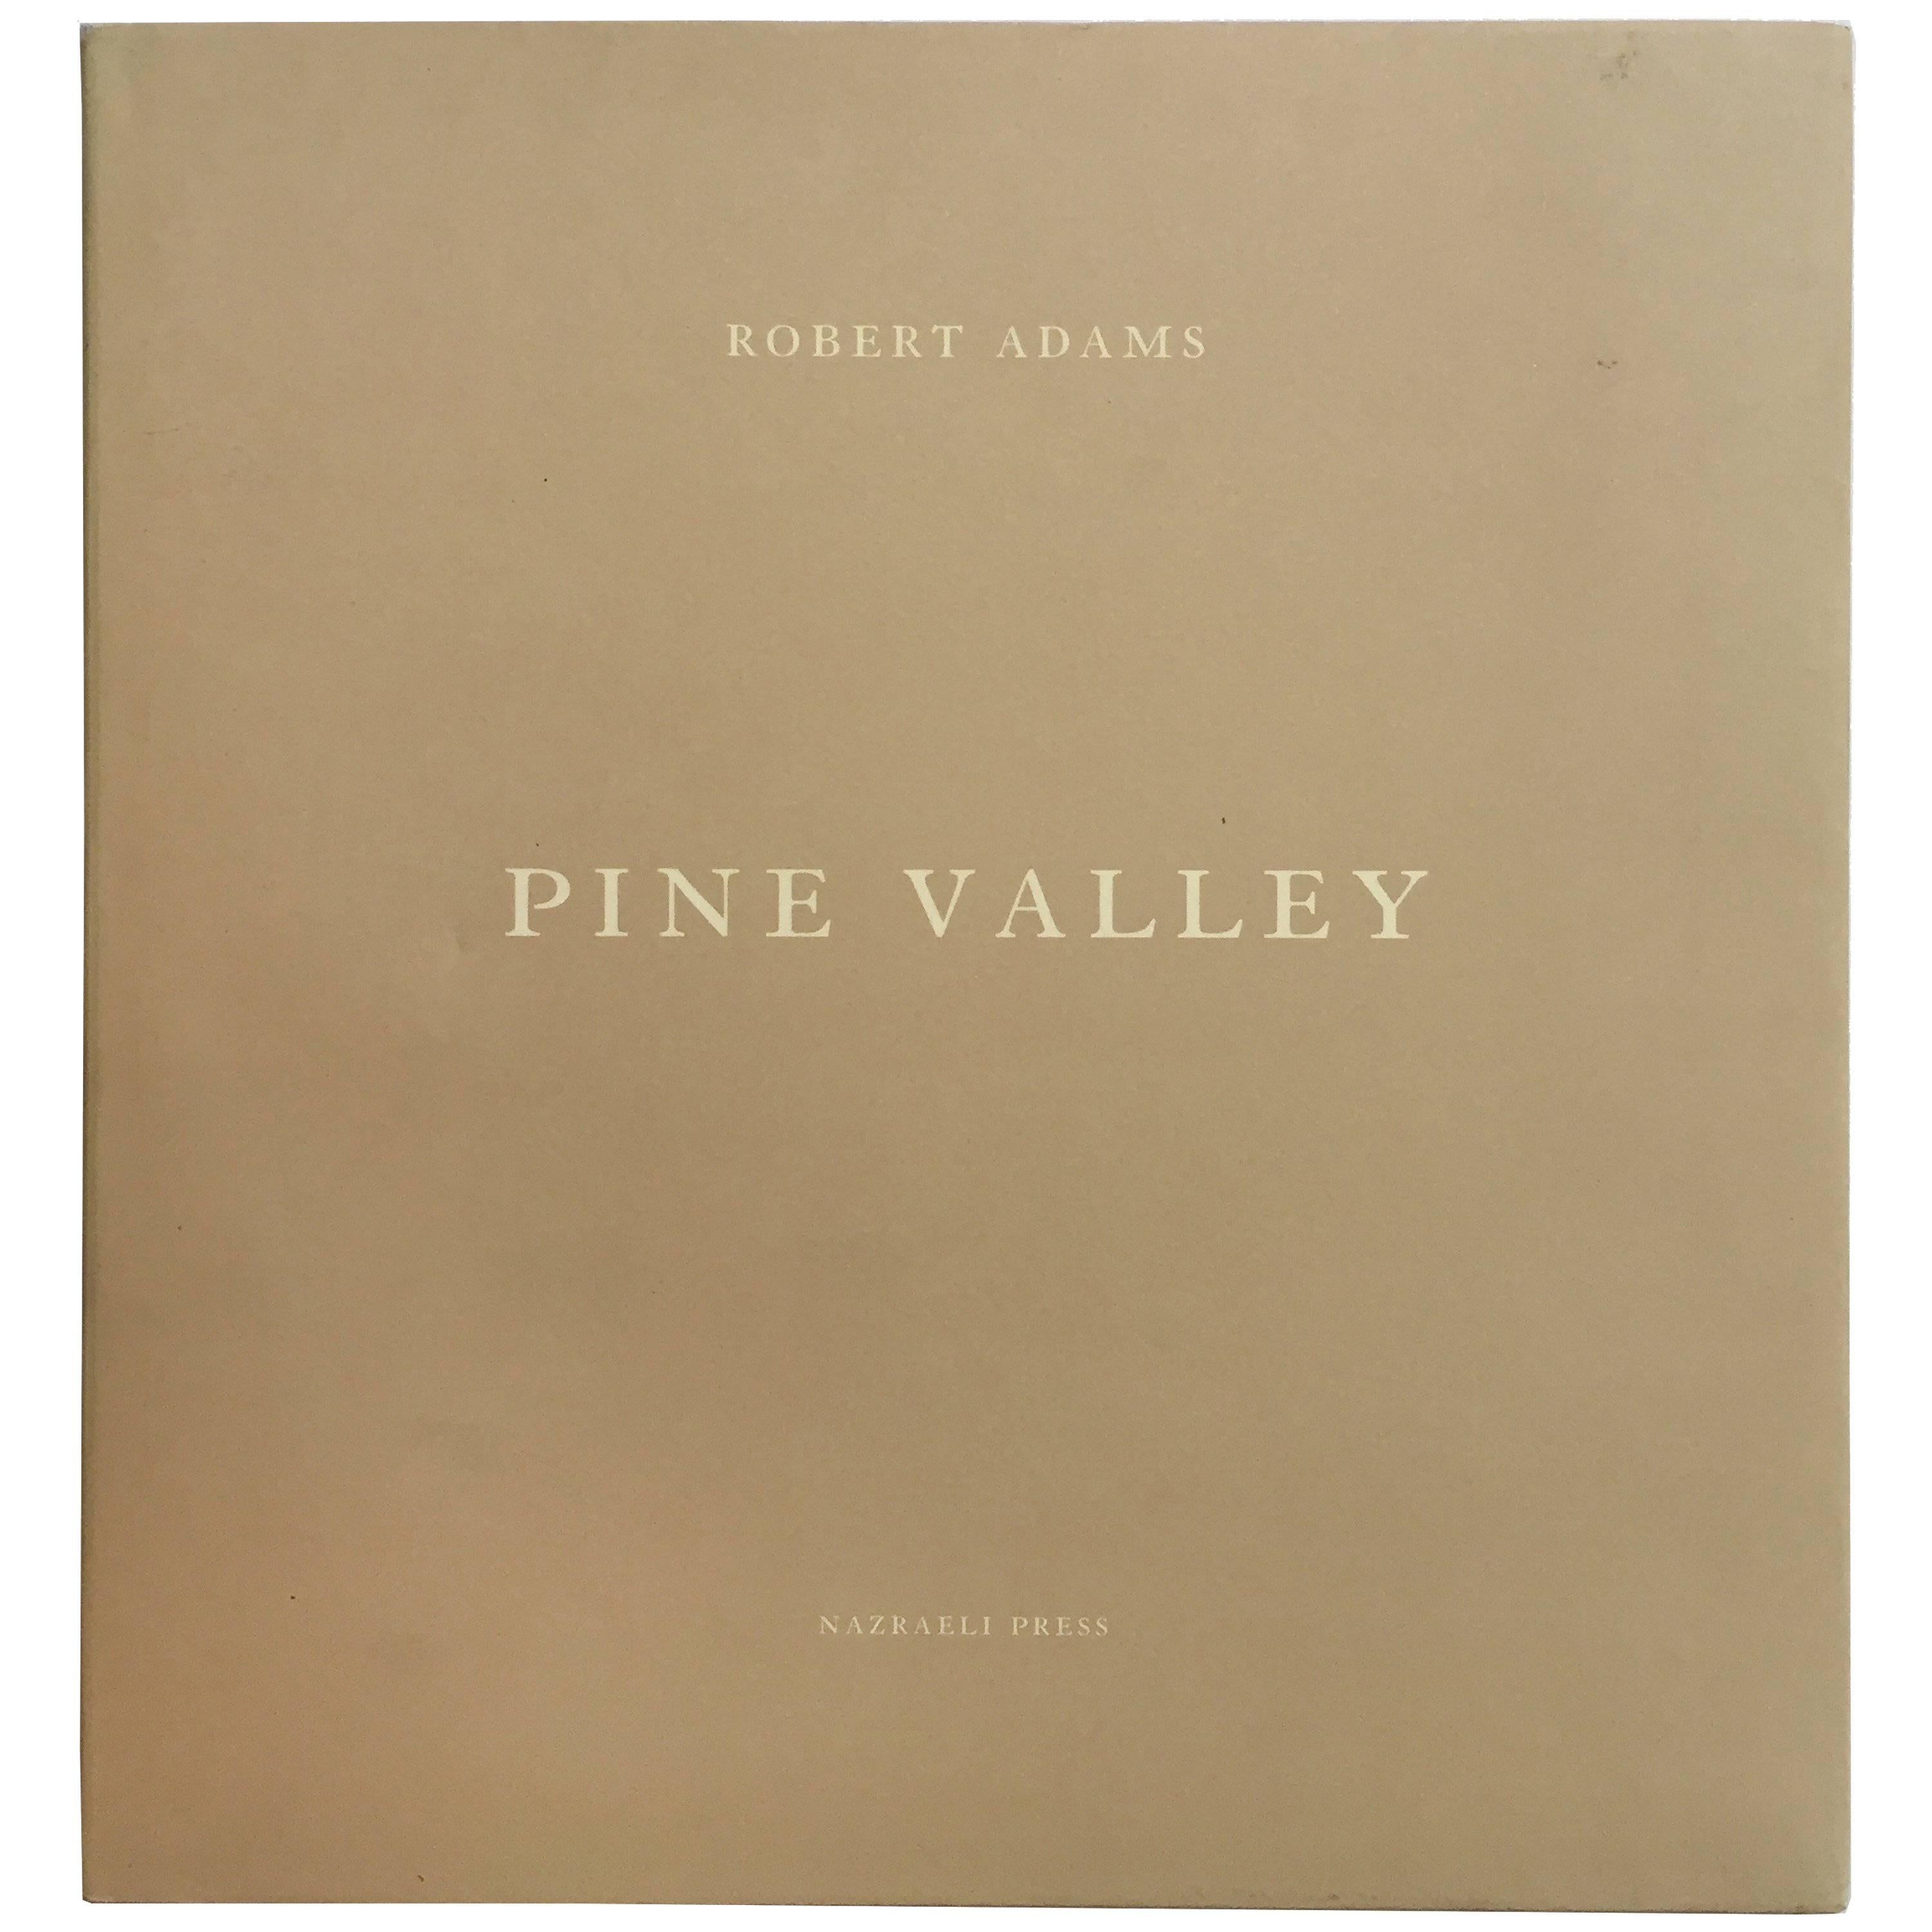 Pine Valley - Robert Adams - Signierte 1. Auflage, Nazraeli Press, 2005